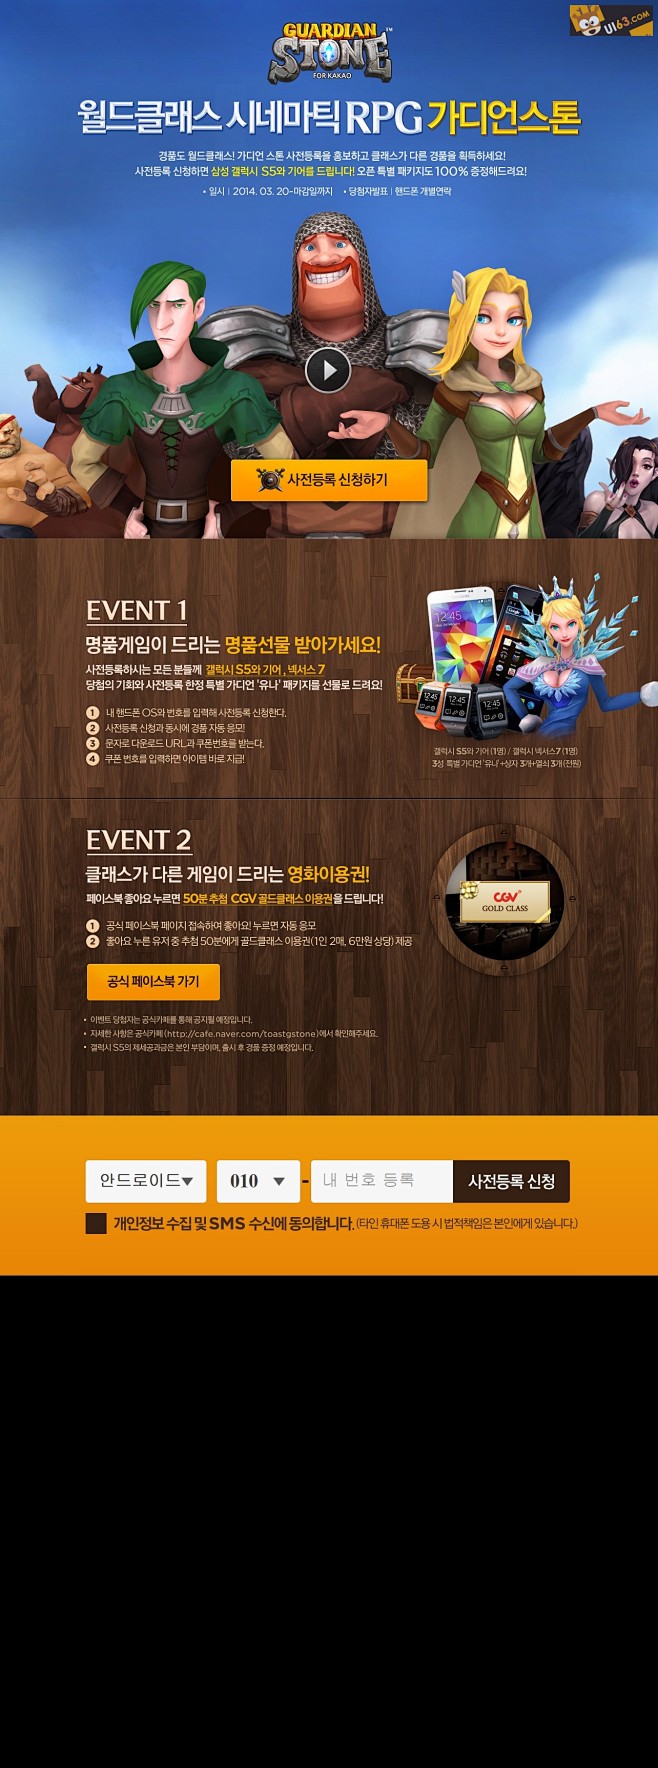 韩国游戏网站《events》UI界面欣赏